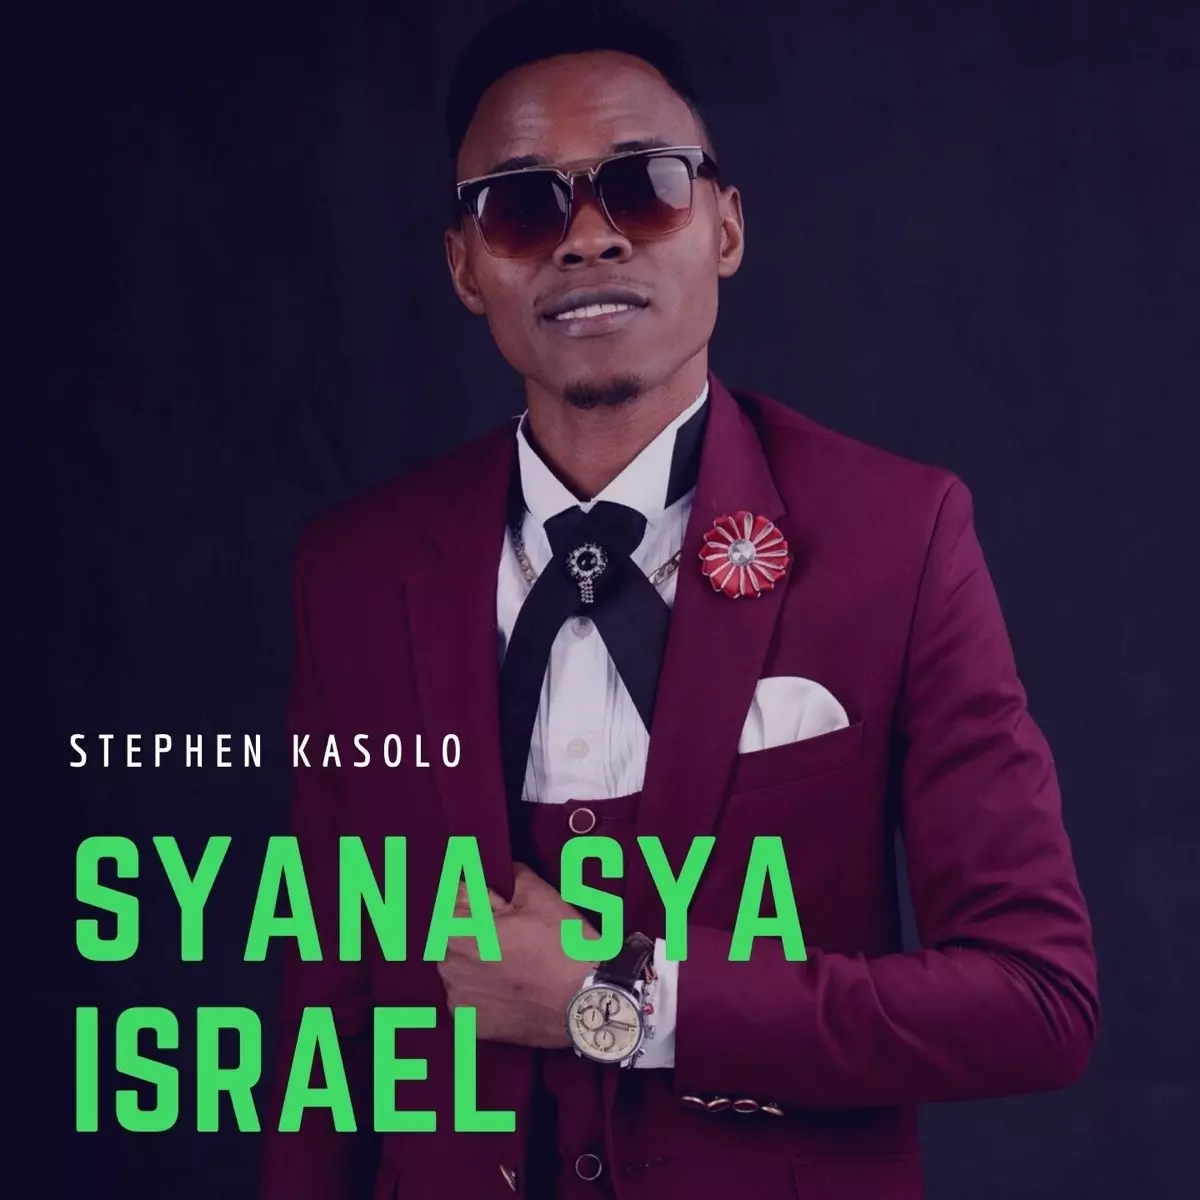 Syana Sya Israel - Single by Stephen Kasolo on Apple Music